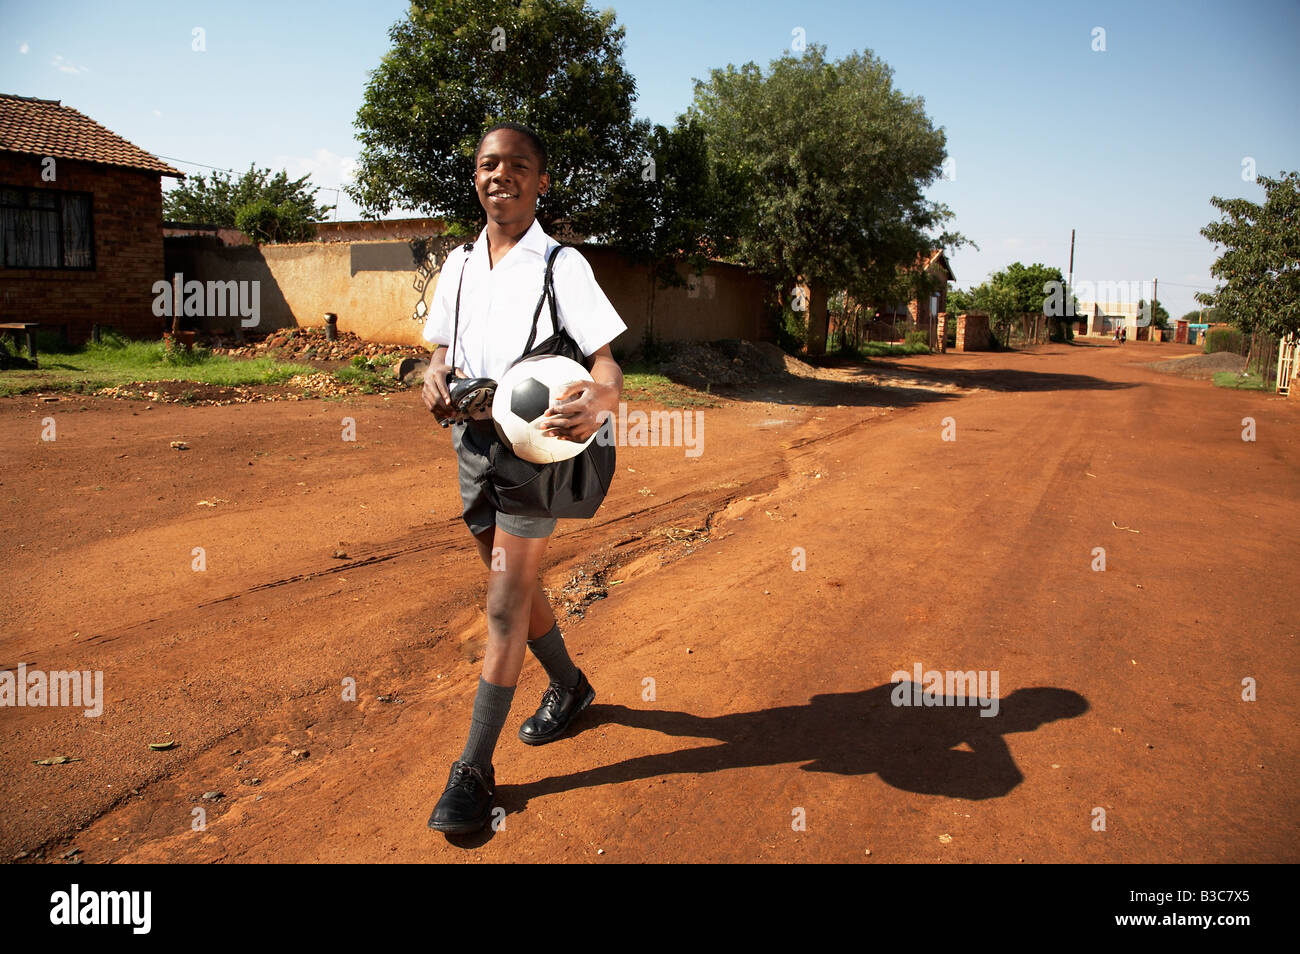 afrikanischen jungen Fußball spielen Stockfoto